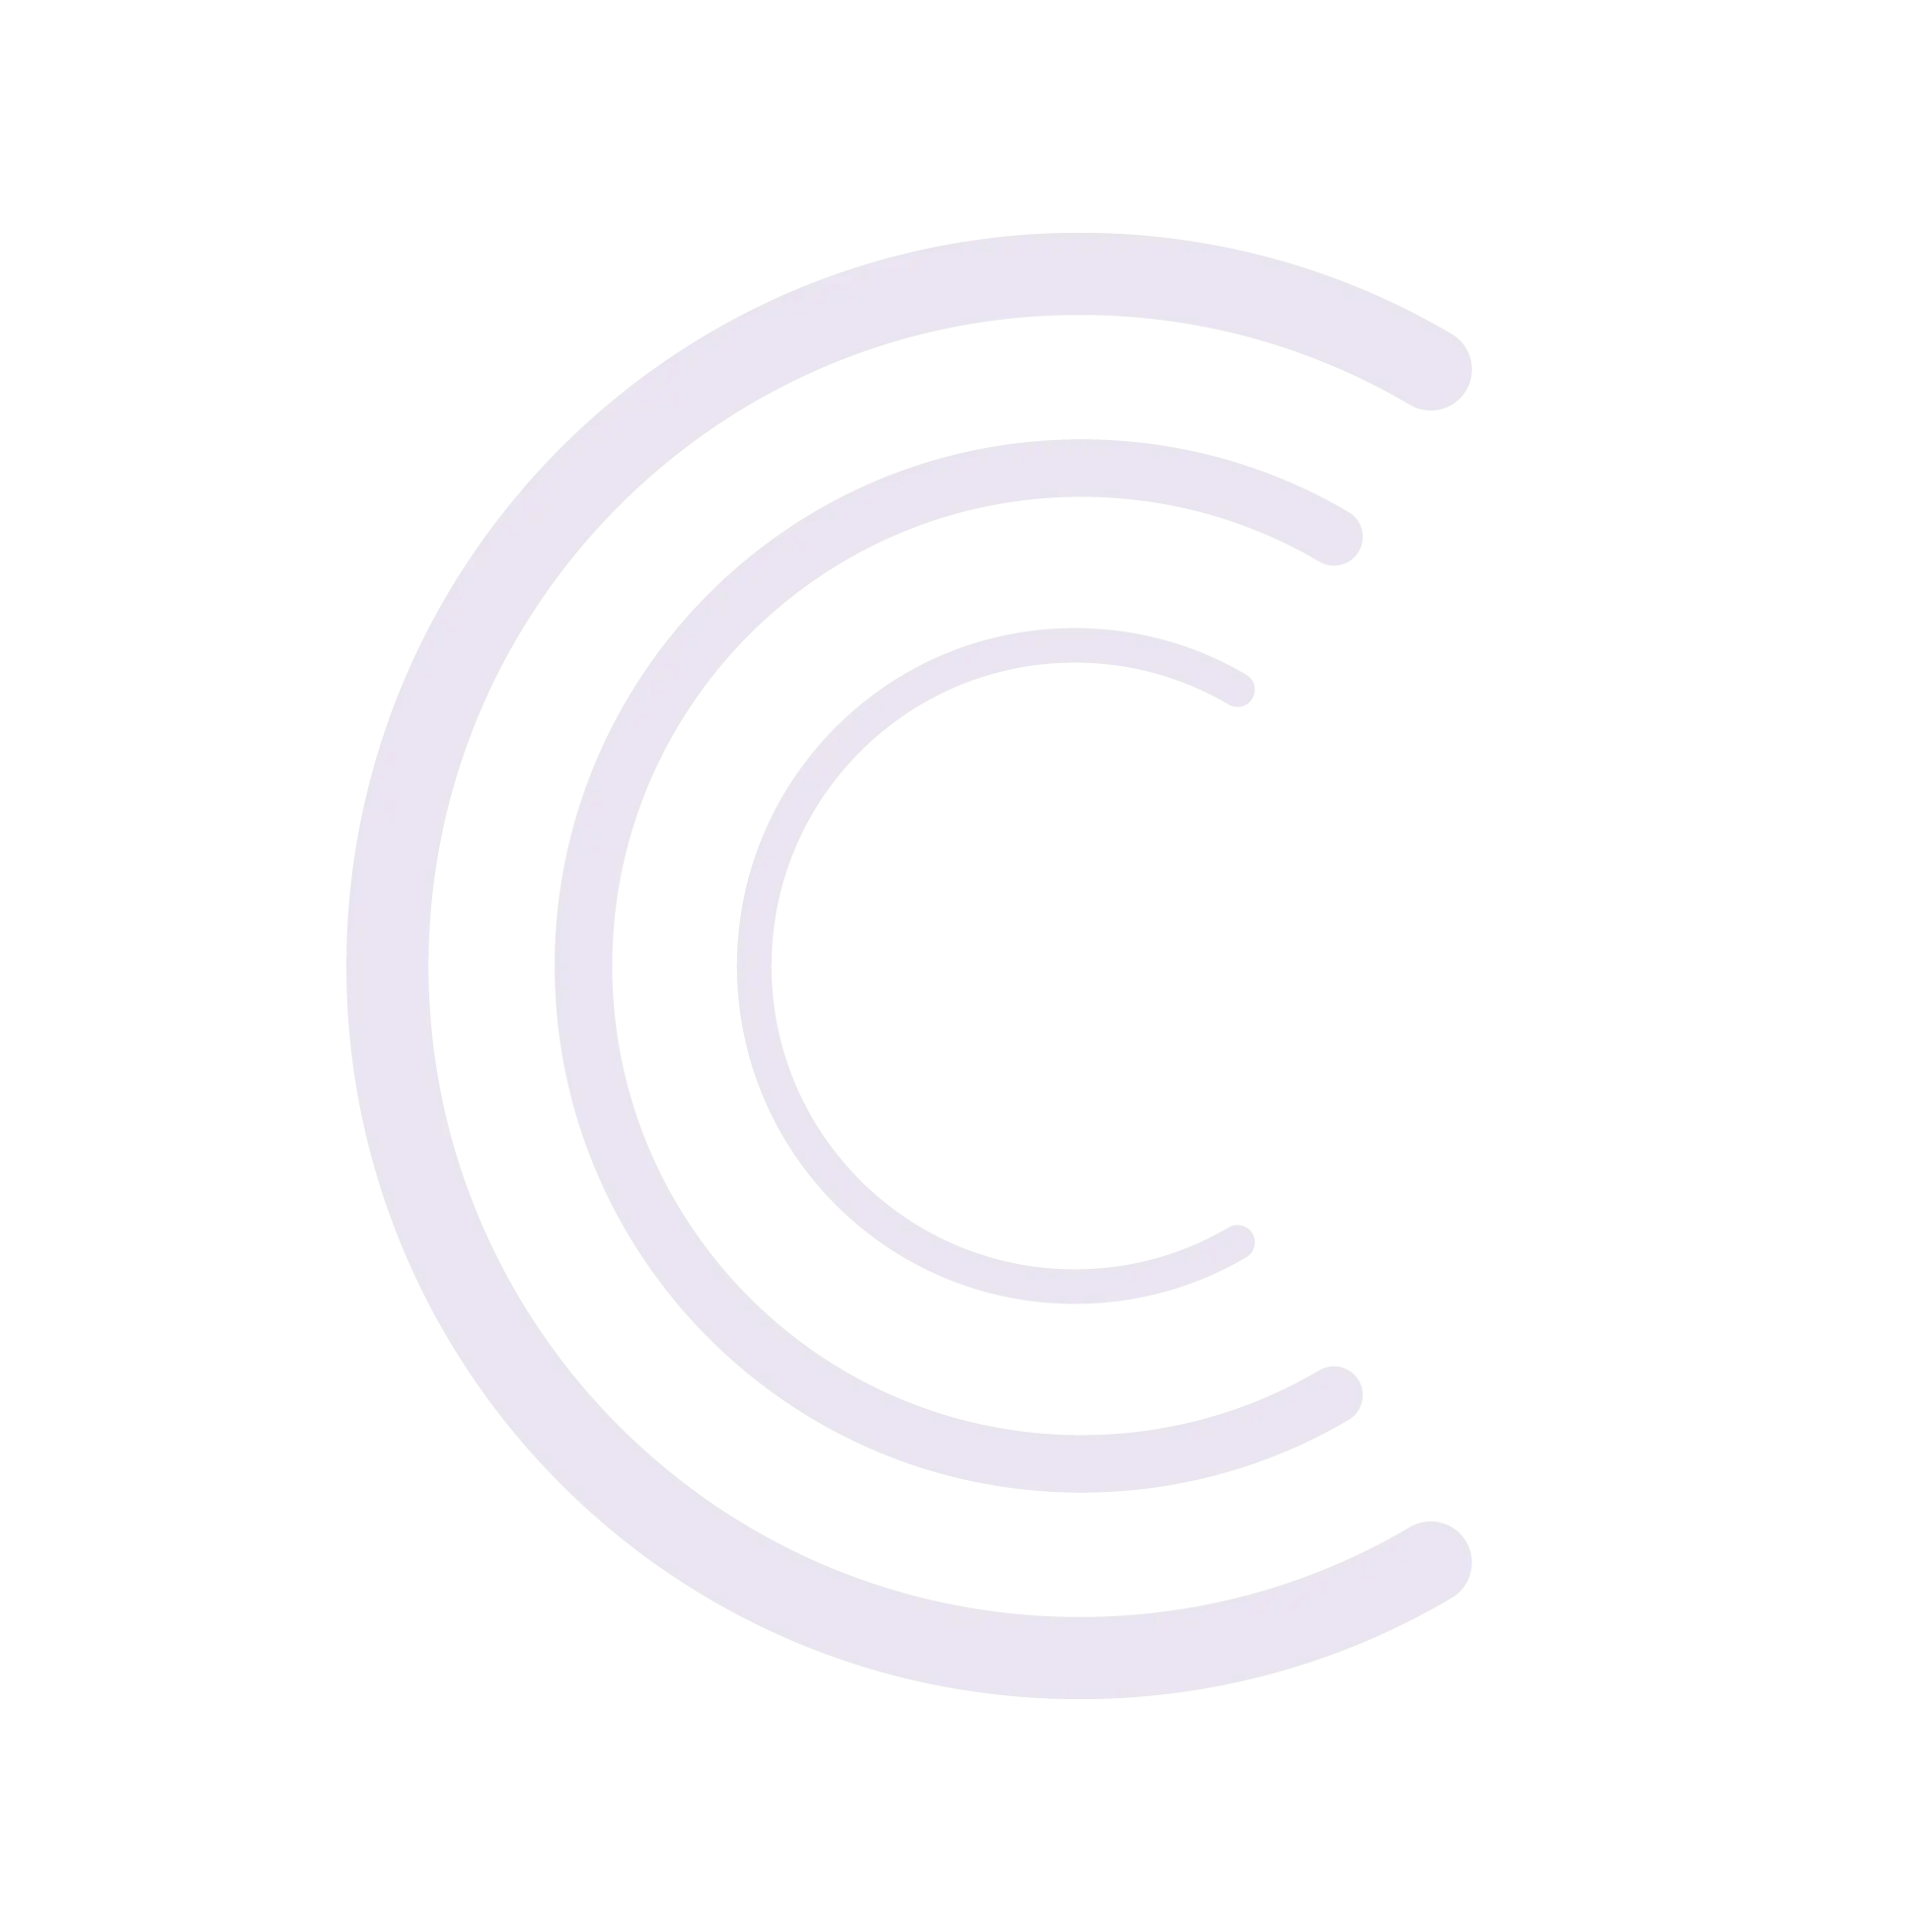 Cordego's Logo - Logograph